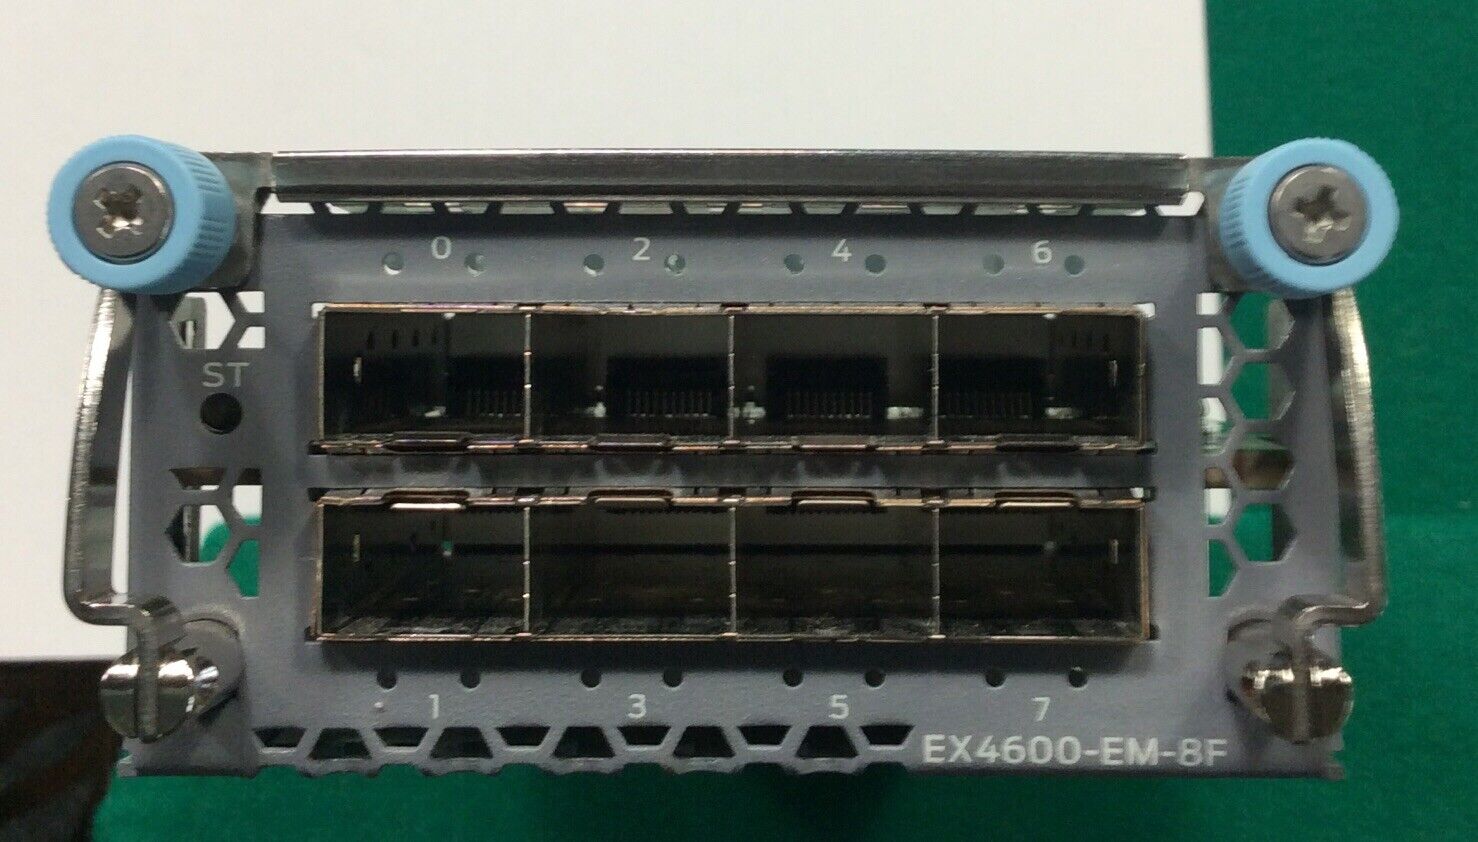 JUNIPER EX4600-EM-8F 8 port SFP+/SFP expansion module Used/Tested